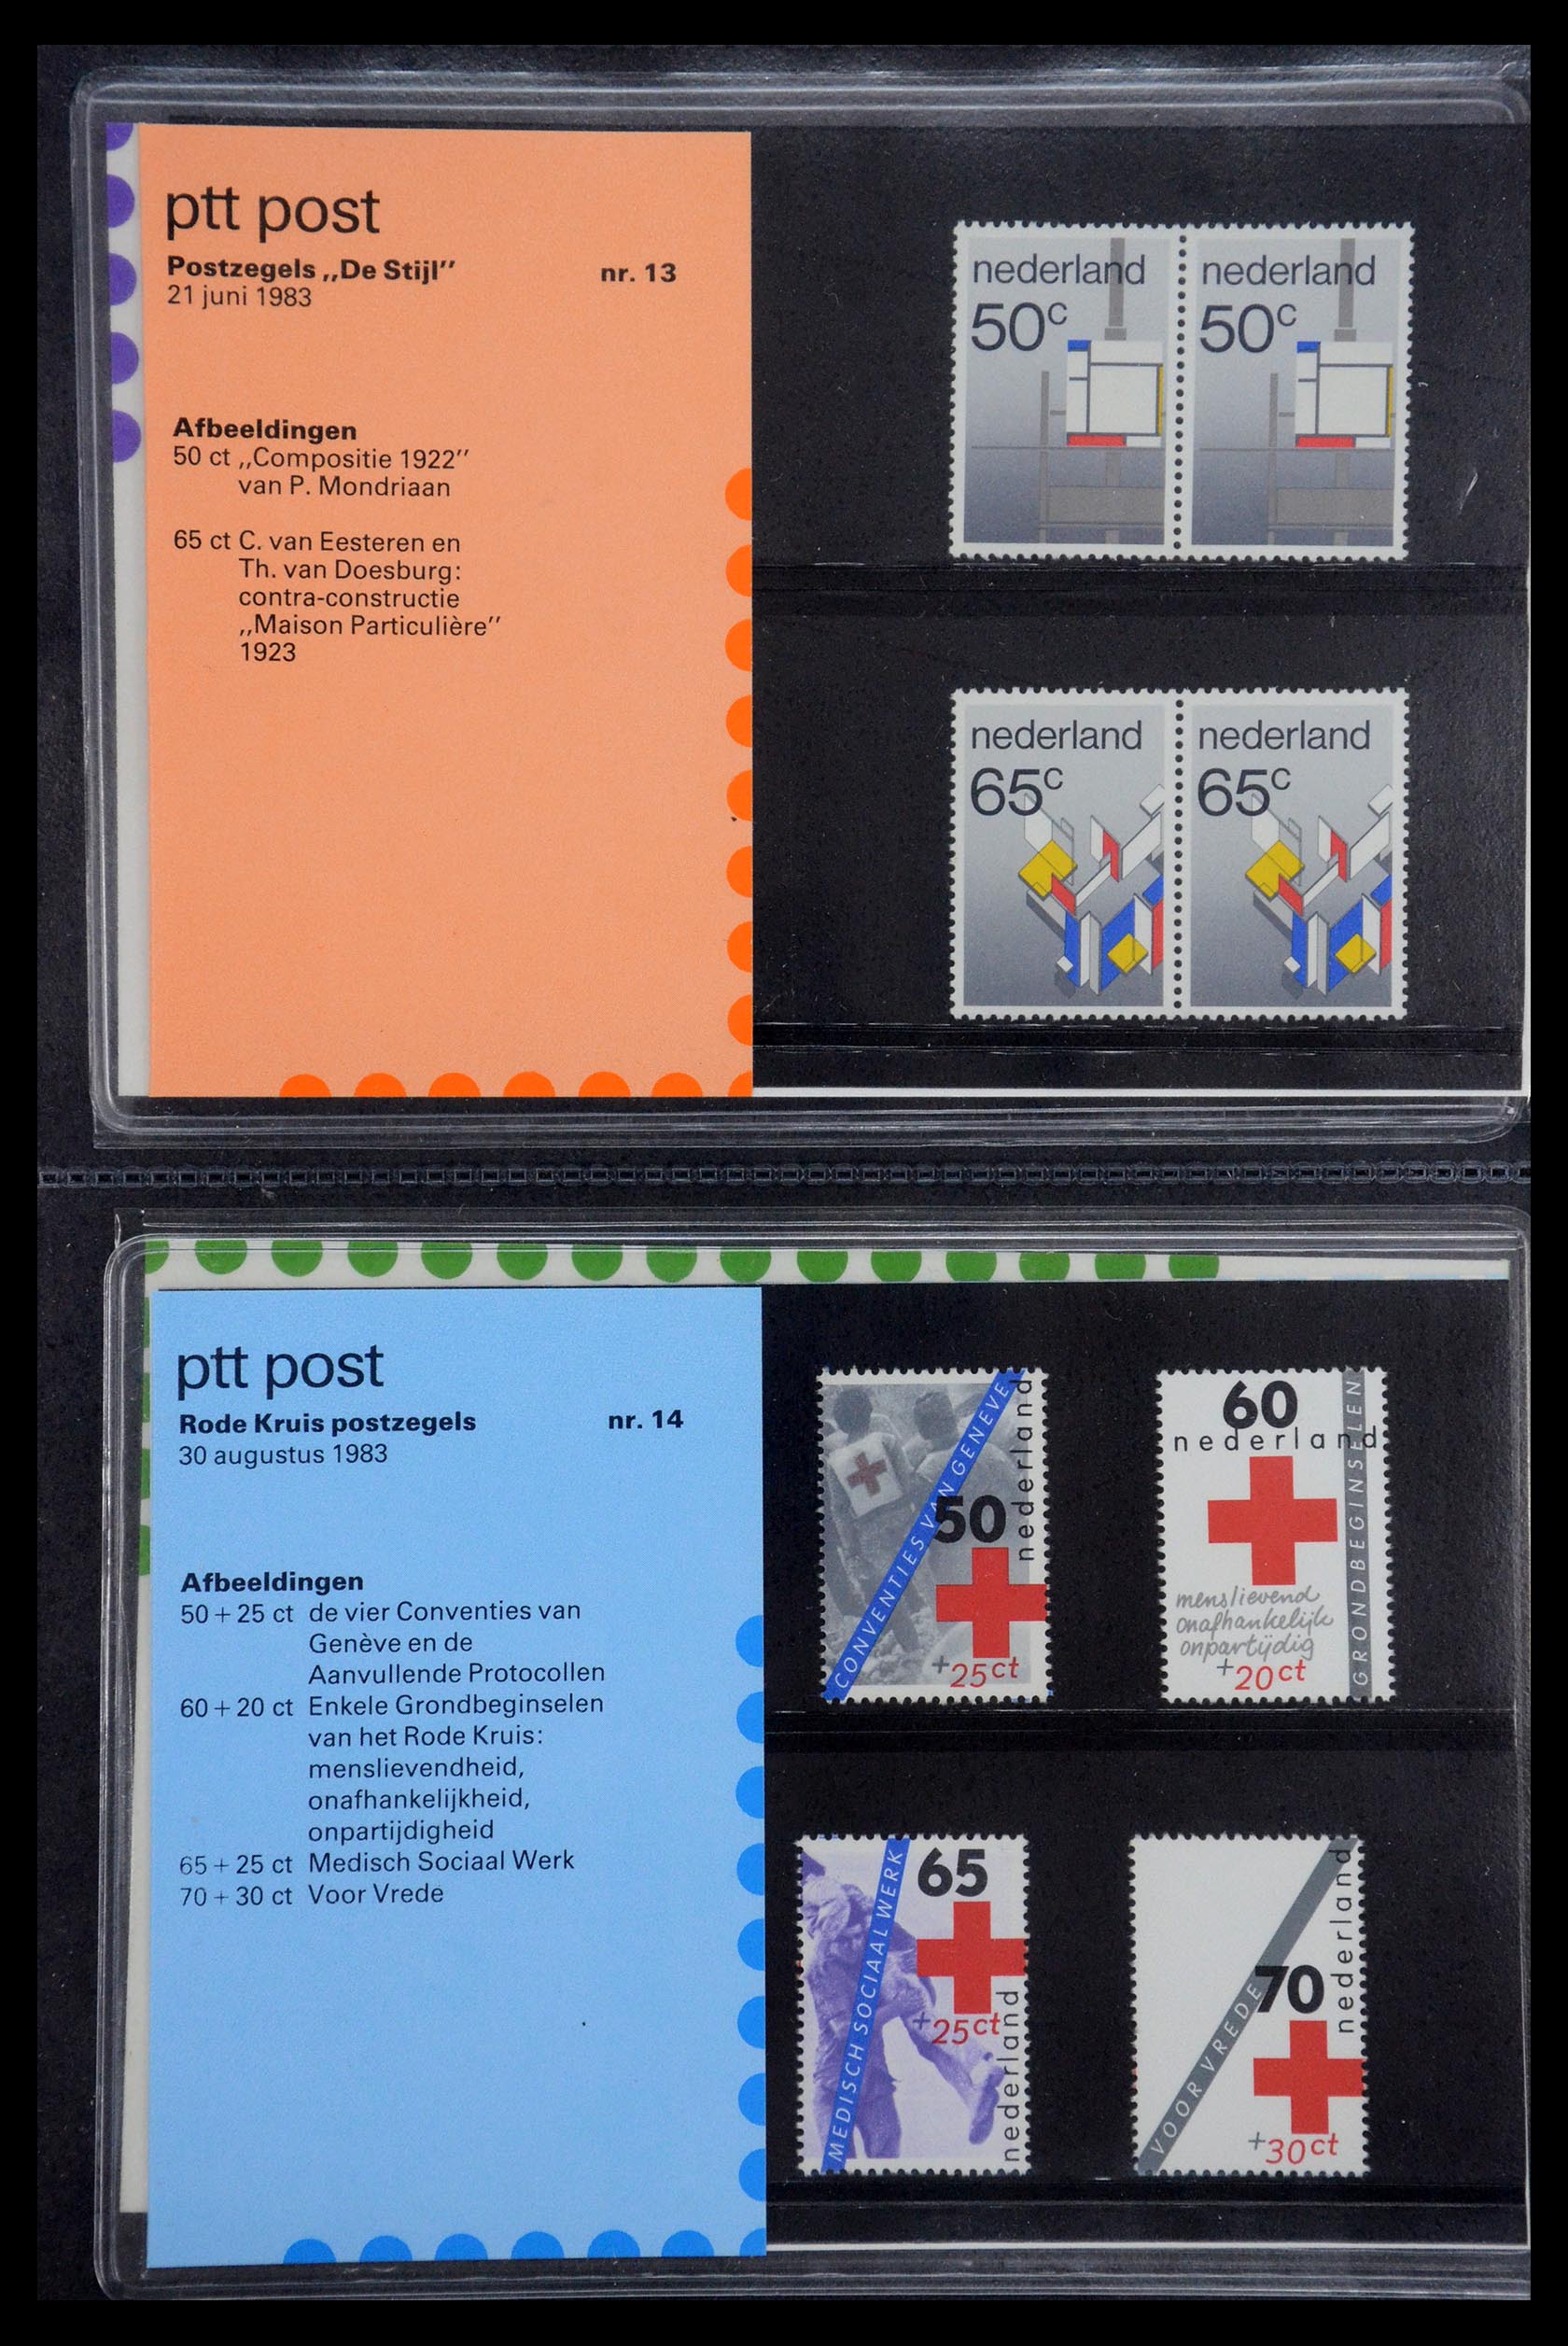 35187 007 - Stamp Collection 35187 Netherlands PTT presentation packs 1982-2019!